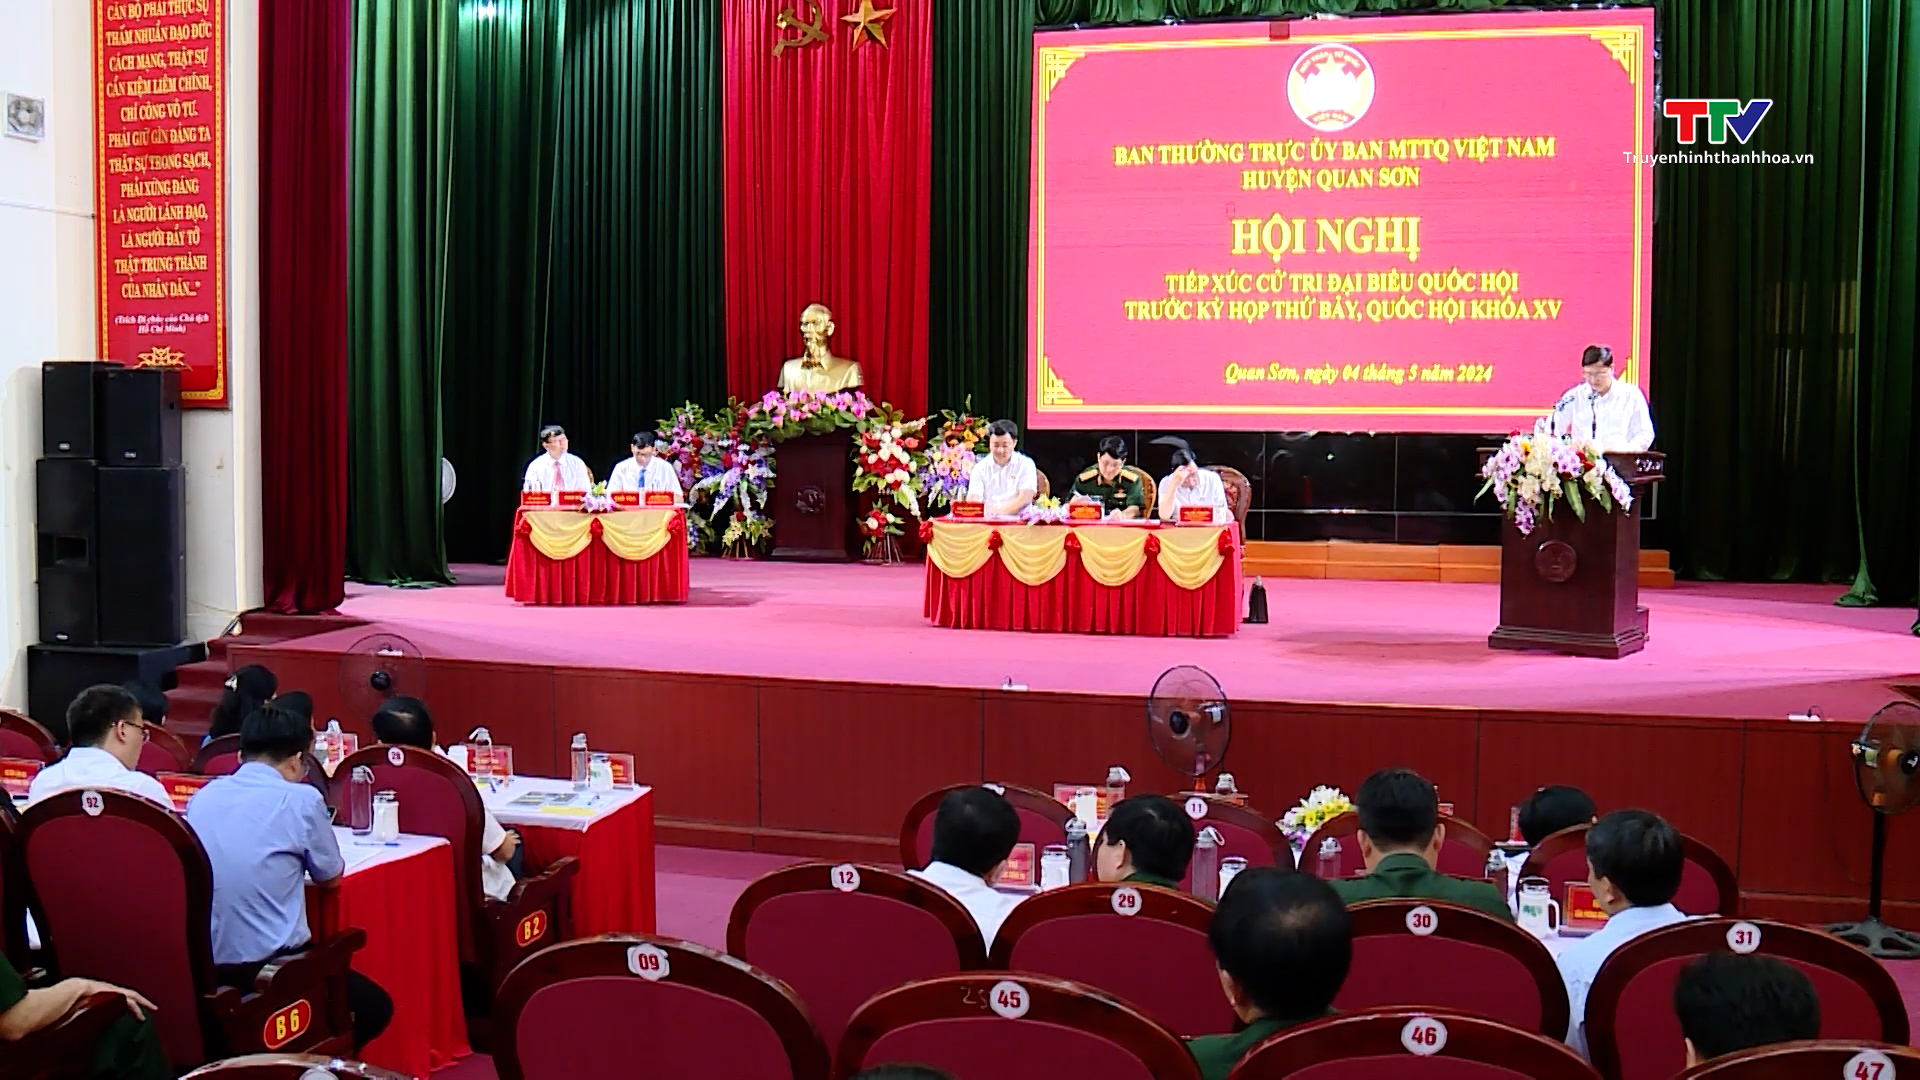 Đại tướng Lương Cường, Ủy viên Bộ Chính trị, Chủ nhiệm Tổng cục Chính trị quân đội nhân dân Việt Nam tiếp xúc cử tri tại Quan Sơn- Ảnh 2.